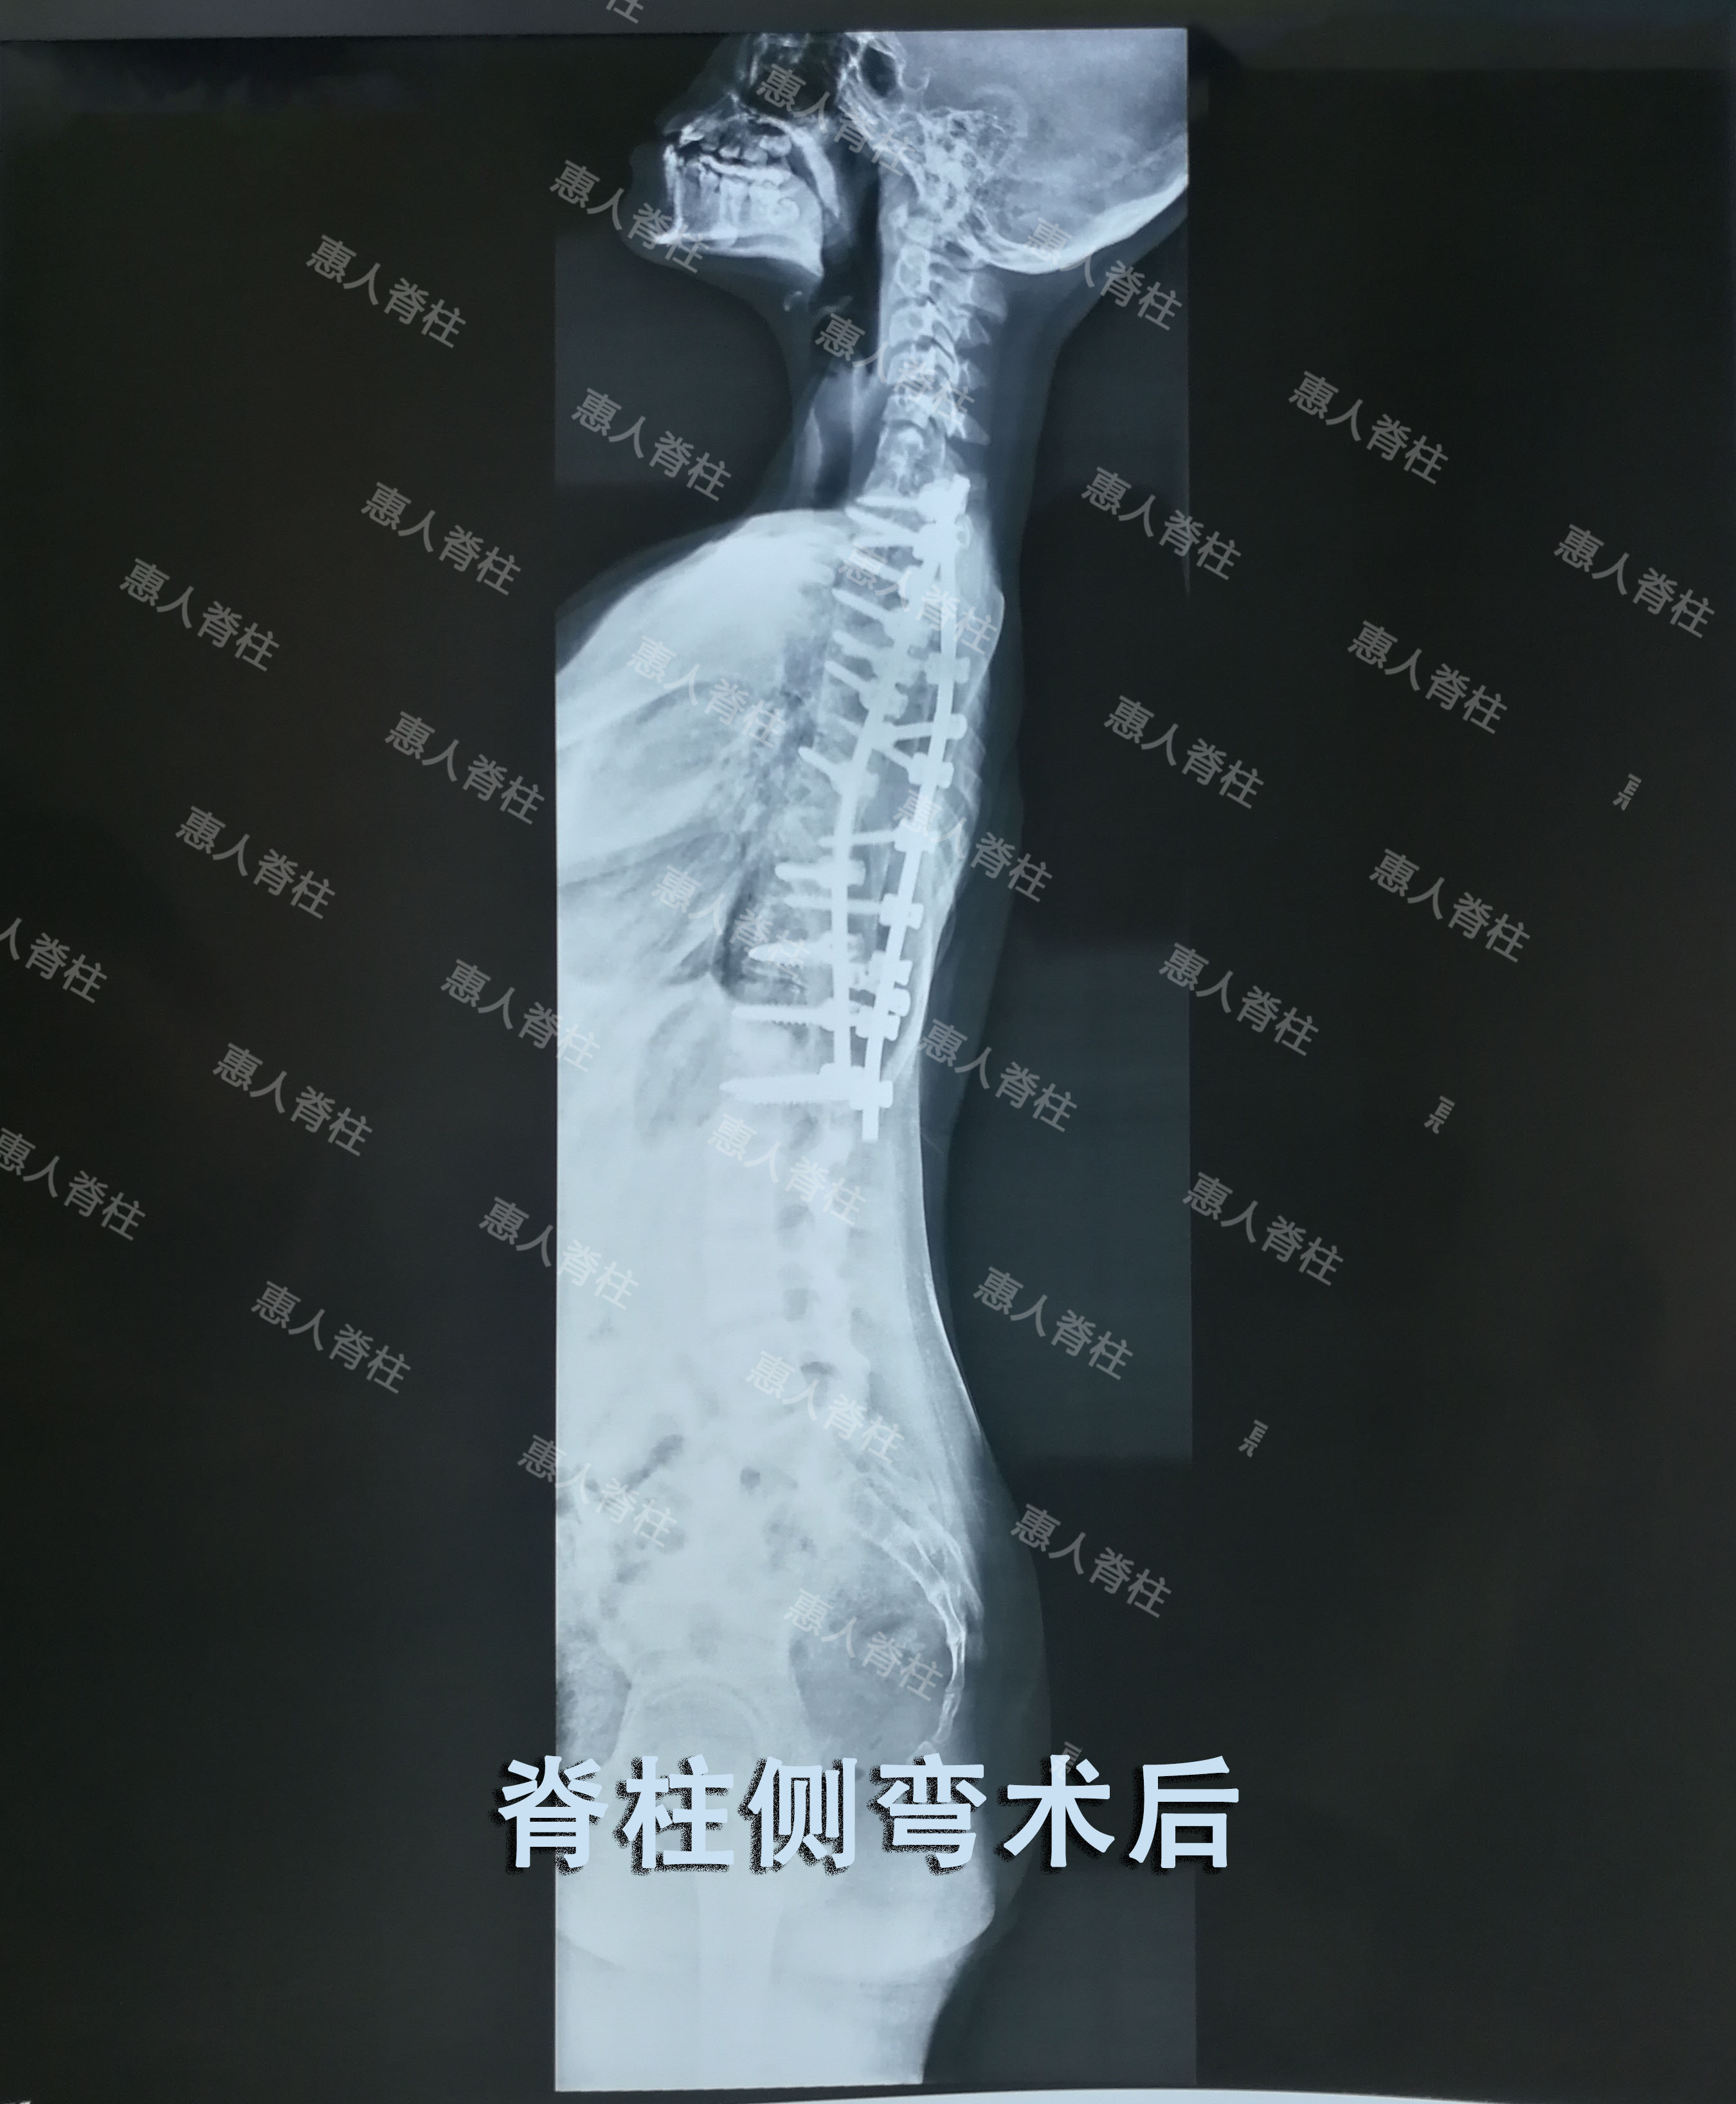 先天性脊柱侧凸是由于脊柱在胚胎时期出现脊椎的分节不完全,一侧有骨